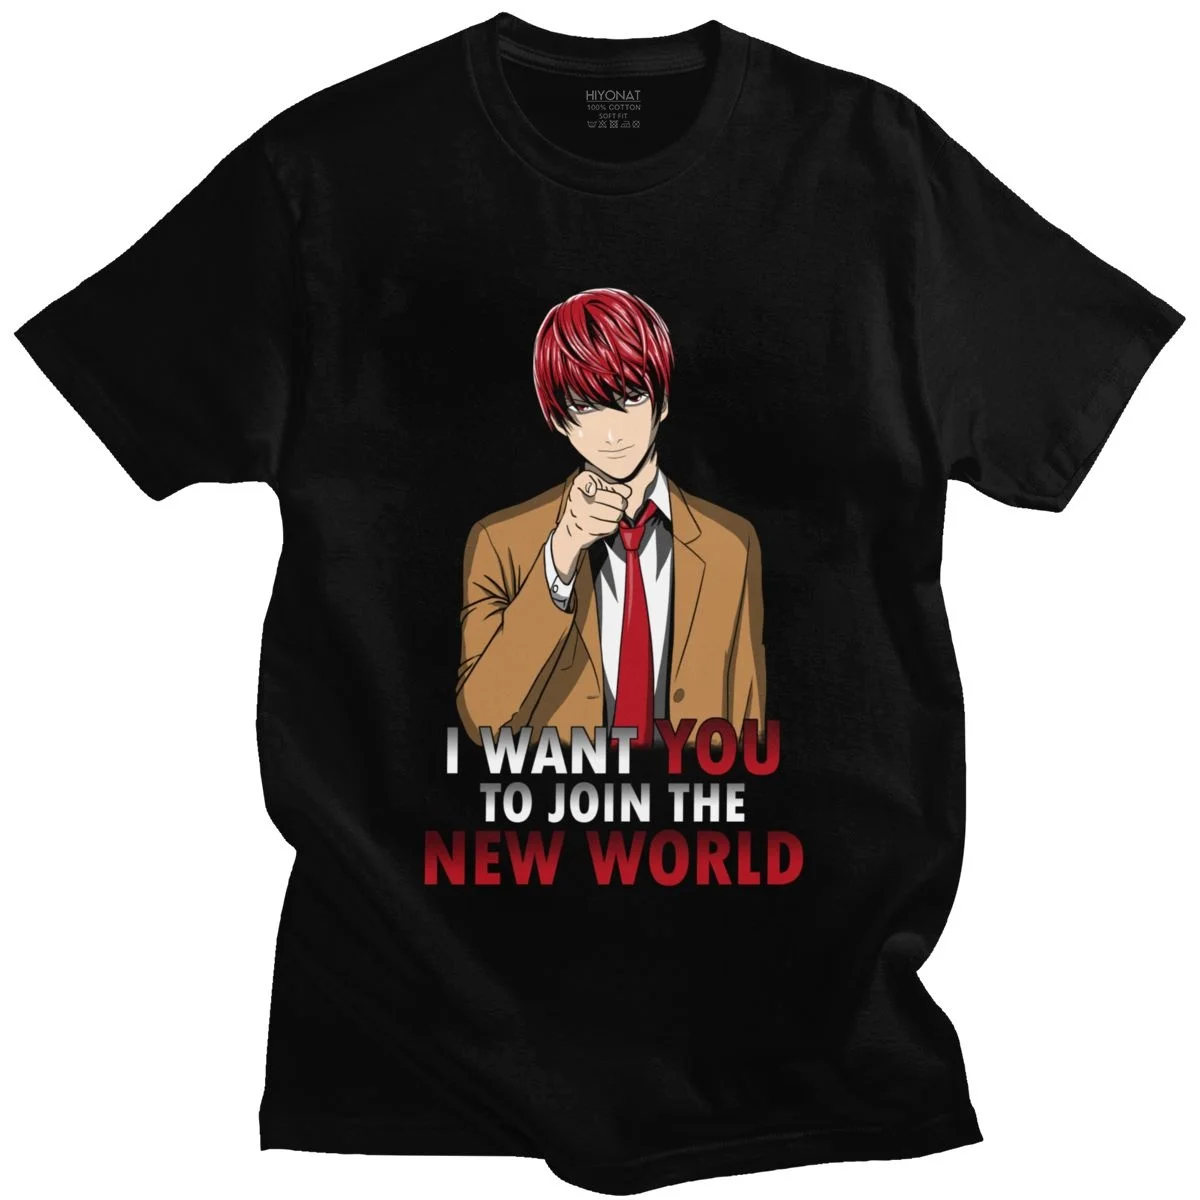 

Забавная Футболка Death Note, Мужская футболка с коротким рукавом, светильник Yagami, футболка с аниме-мангой, футболка для фанатов, повседневная хл...